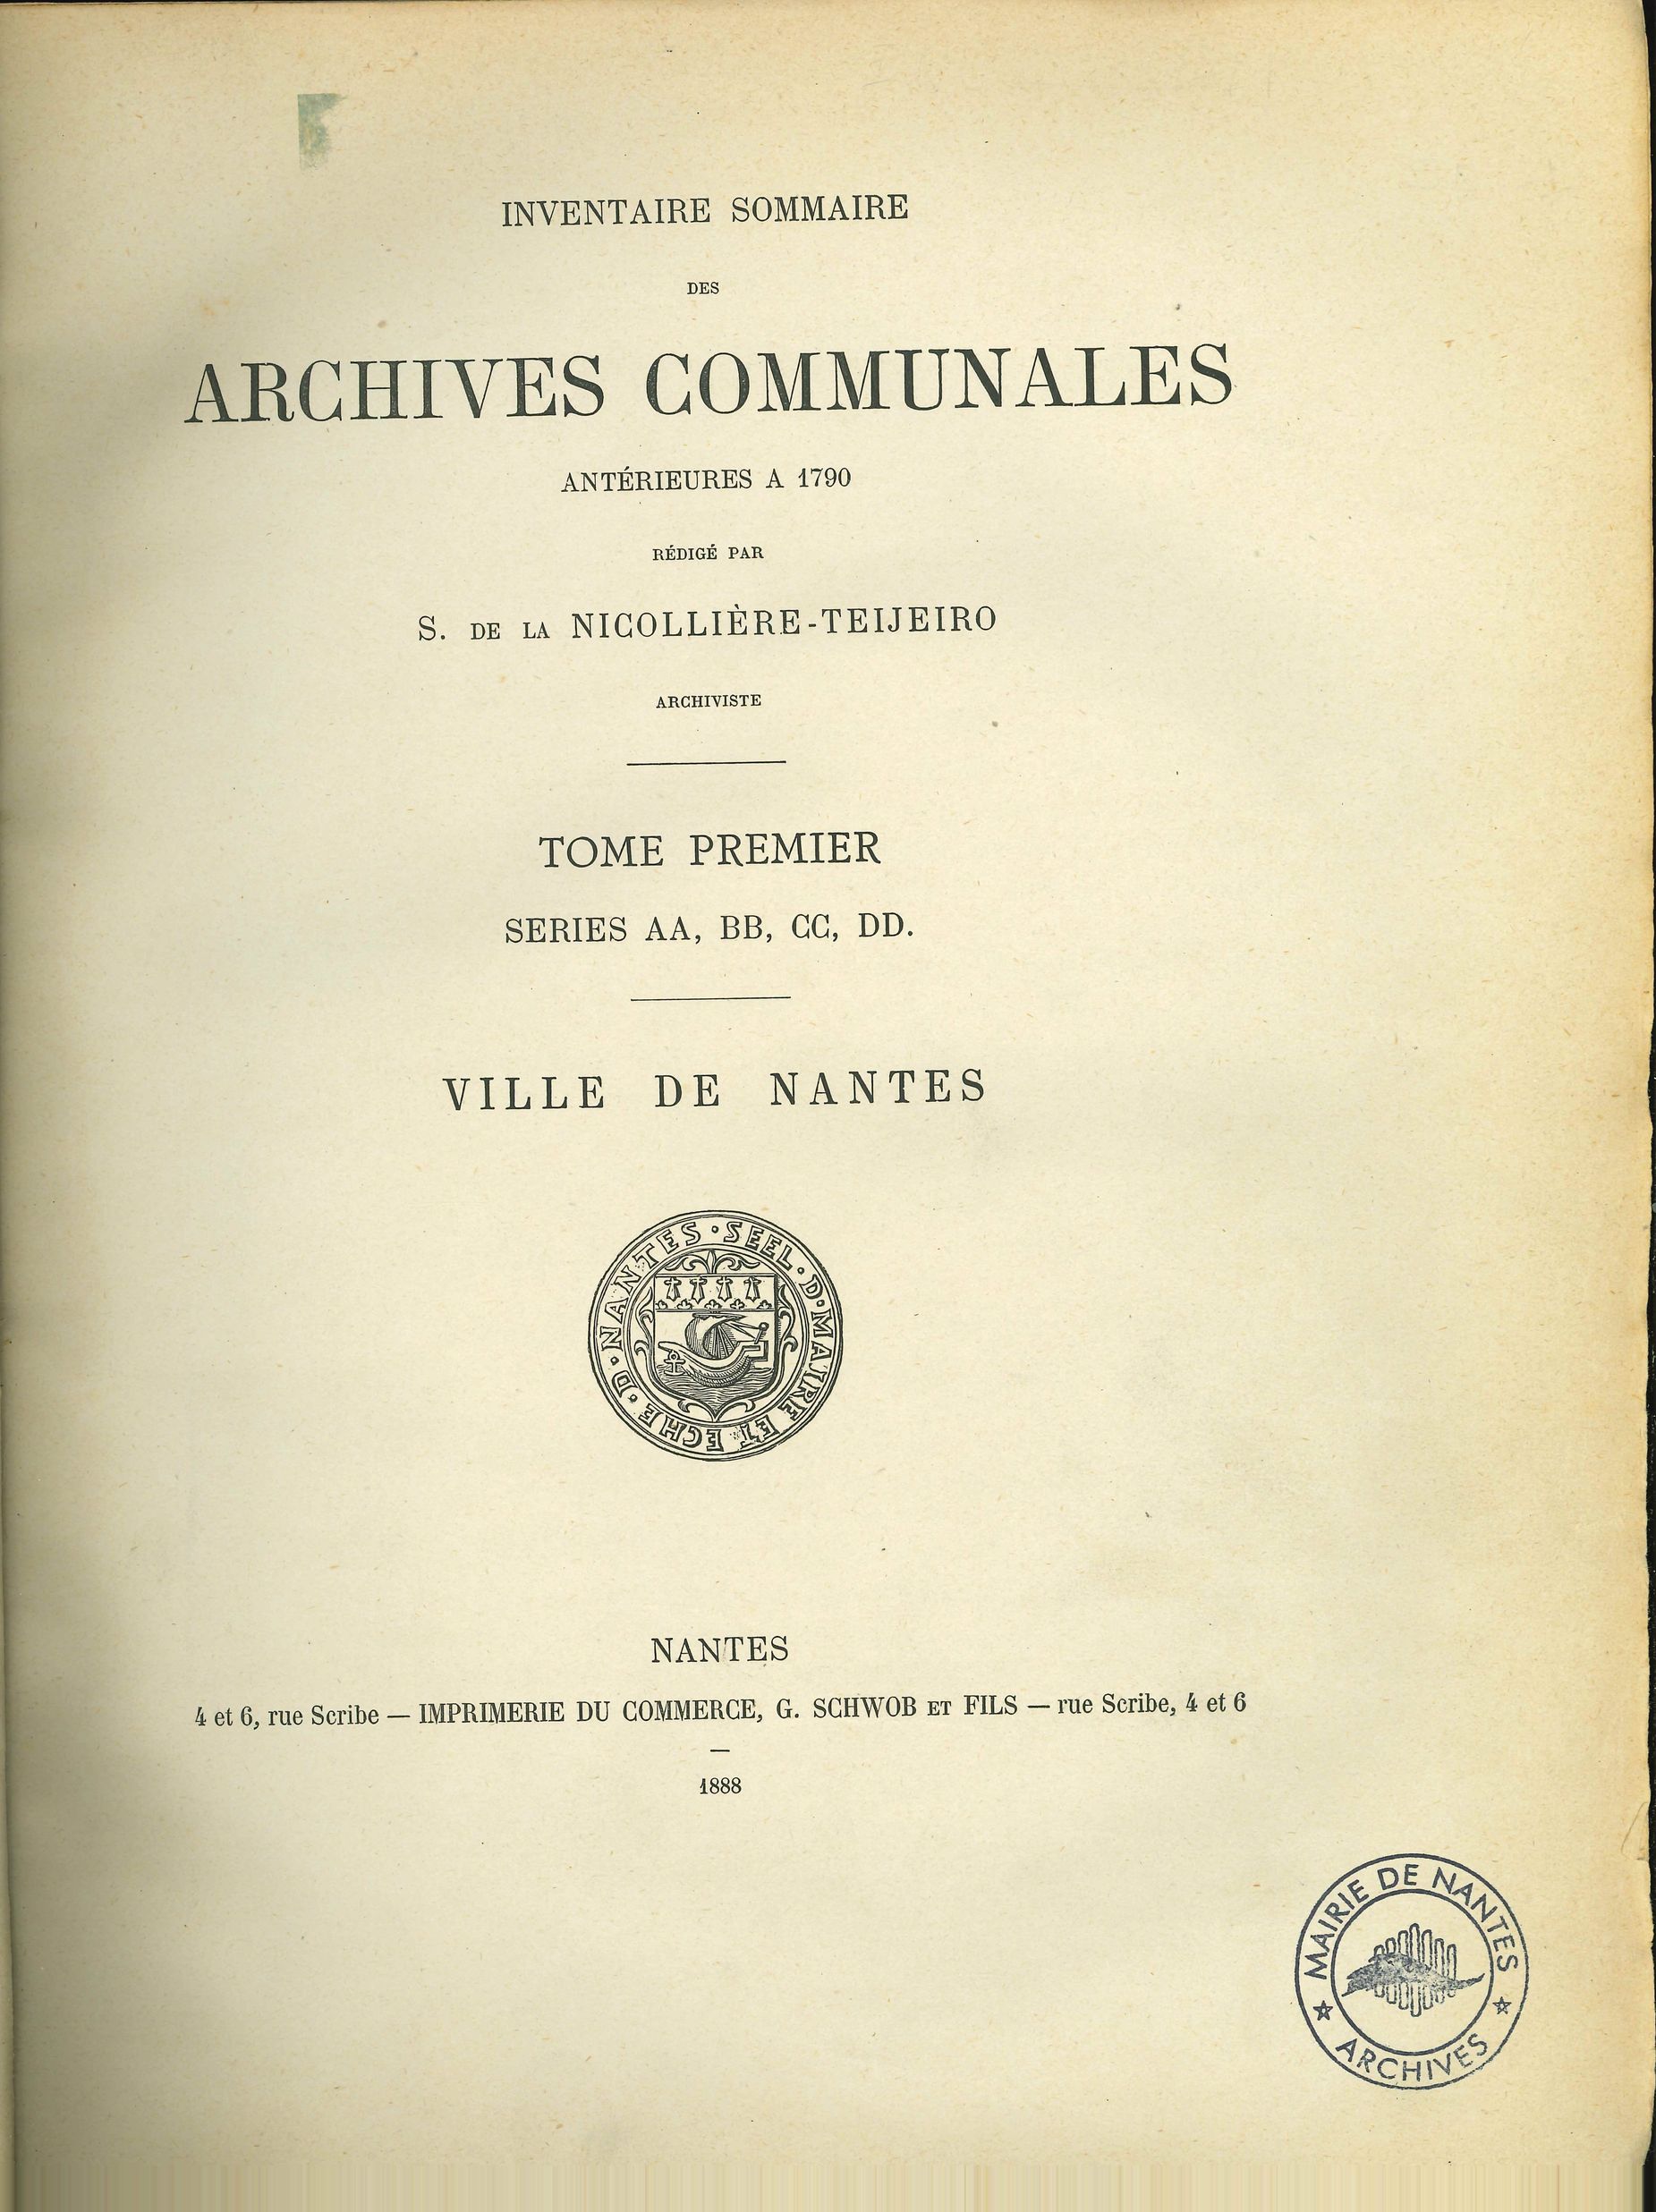 Inventaire sommaire des Archives communales antérieures à 1790. Tome premier, séries AA à DD. 1888 (II197)